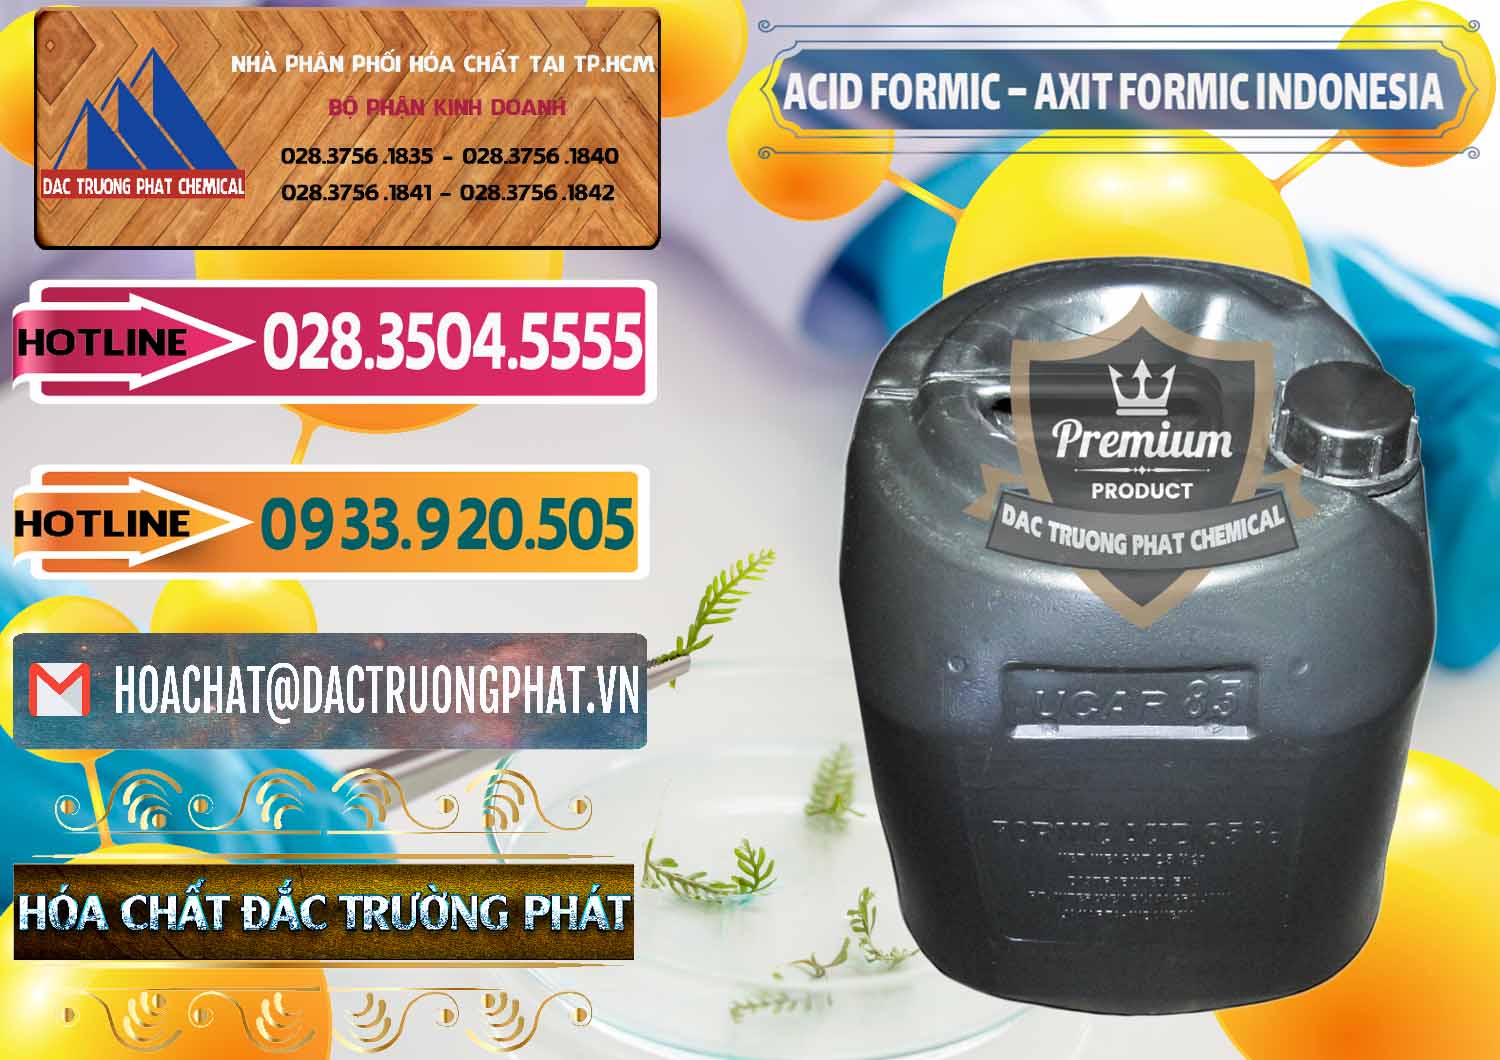 Cty bán & phân phối Acid Formic - Axit Formic Indonesia - 0026 - Cty chuyên cung cấp & bán hóa chất tại TP.HCM - dactruongphat.vn